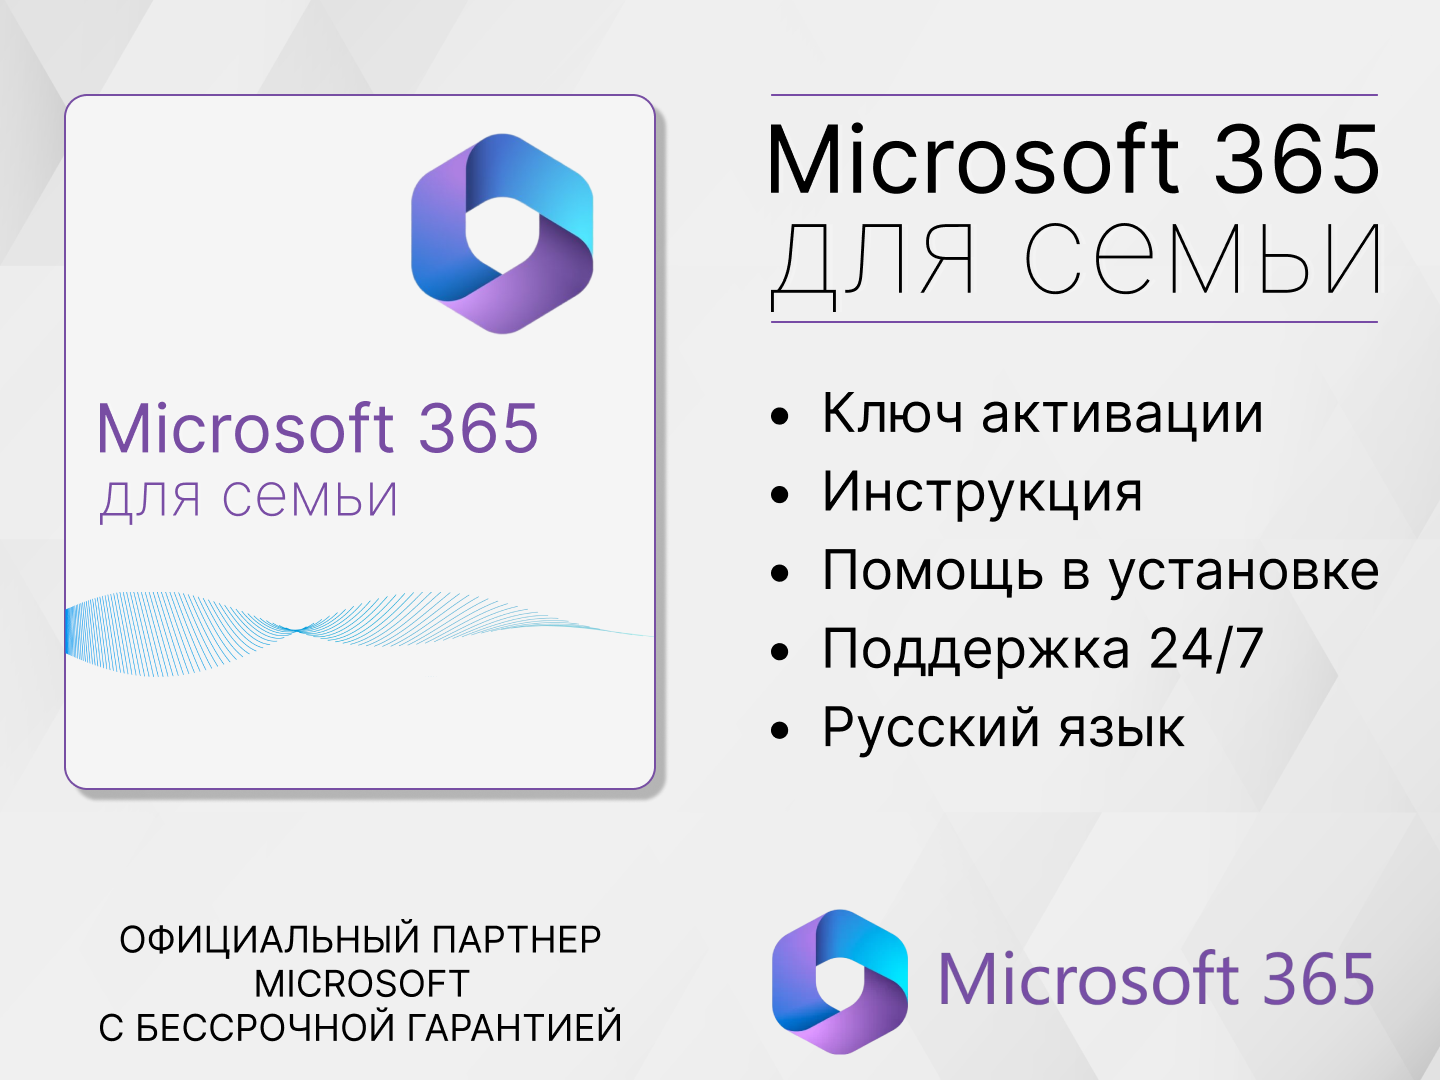 Microsoft 365 семья / 15 месяцев / Office 365, Привязка к Вашей учетной записи через другой регион) Русский язык.